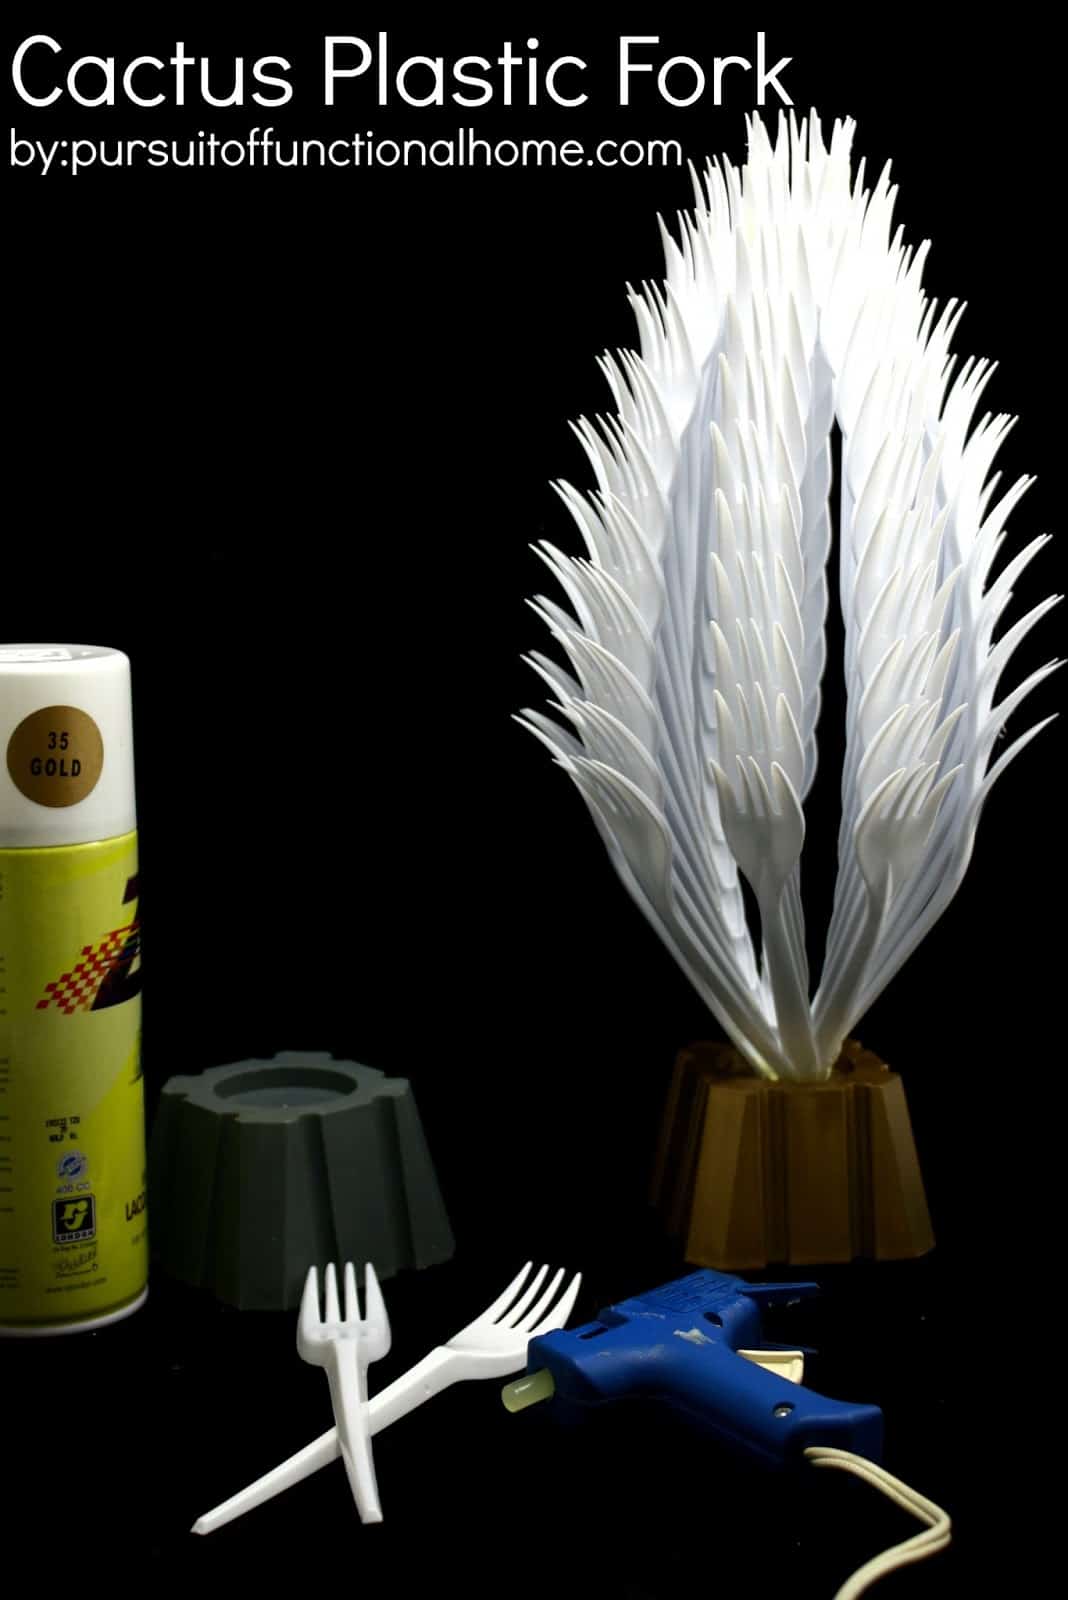 Plastic fork cactus decor